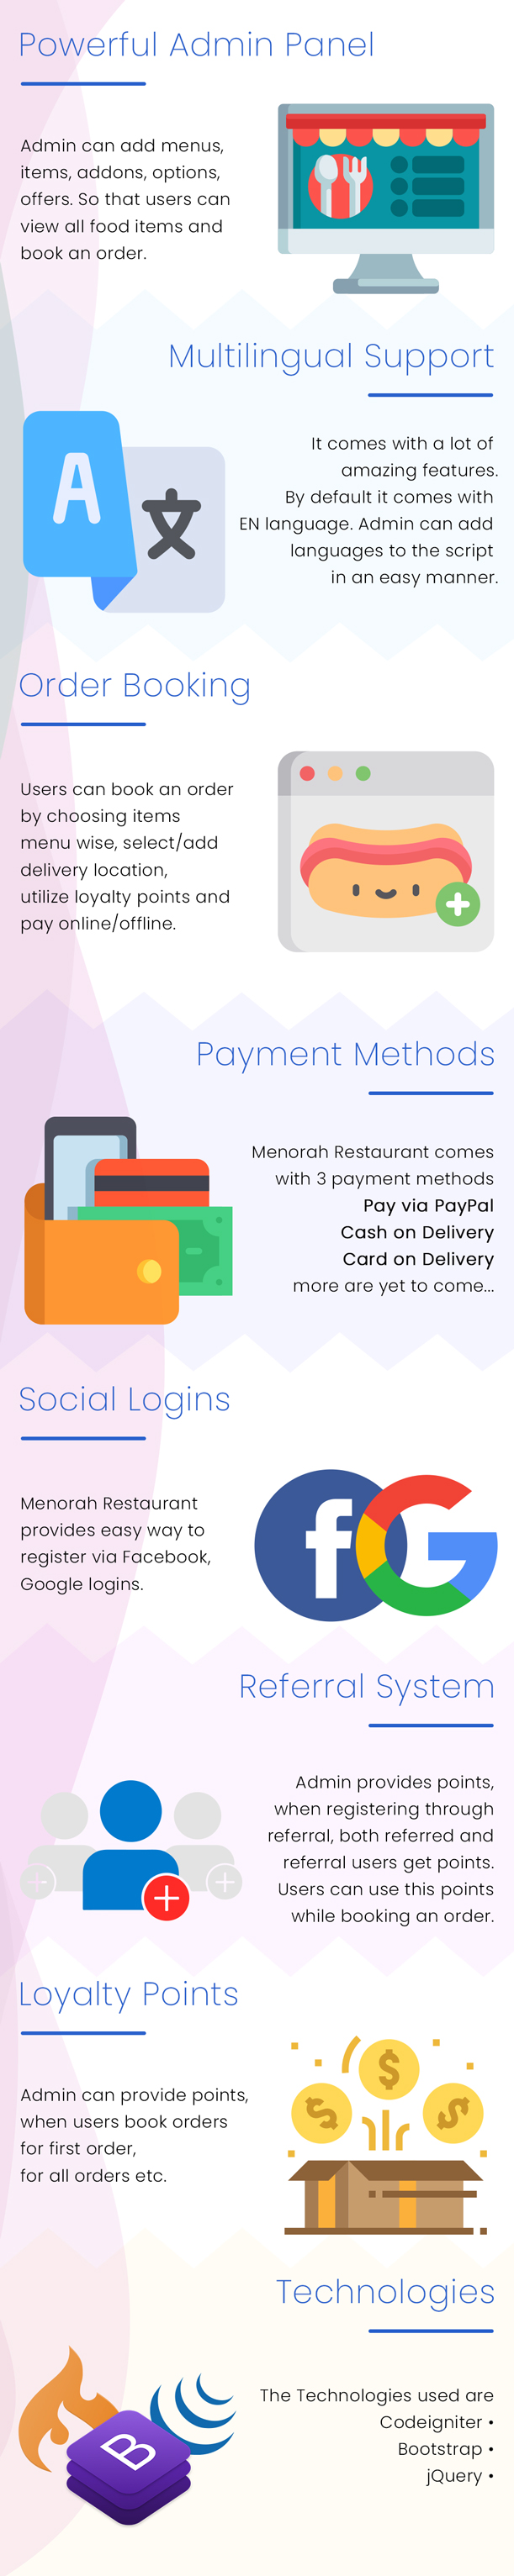 Menorah Restaurant - Restaurant Food Ordering System - 1